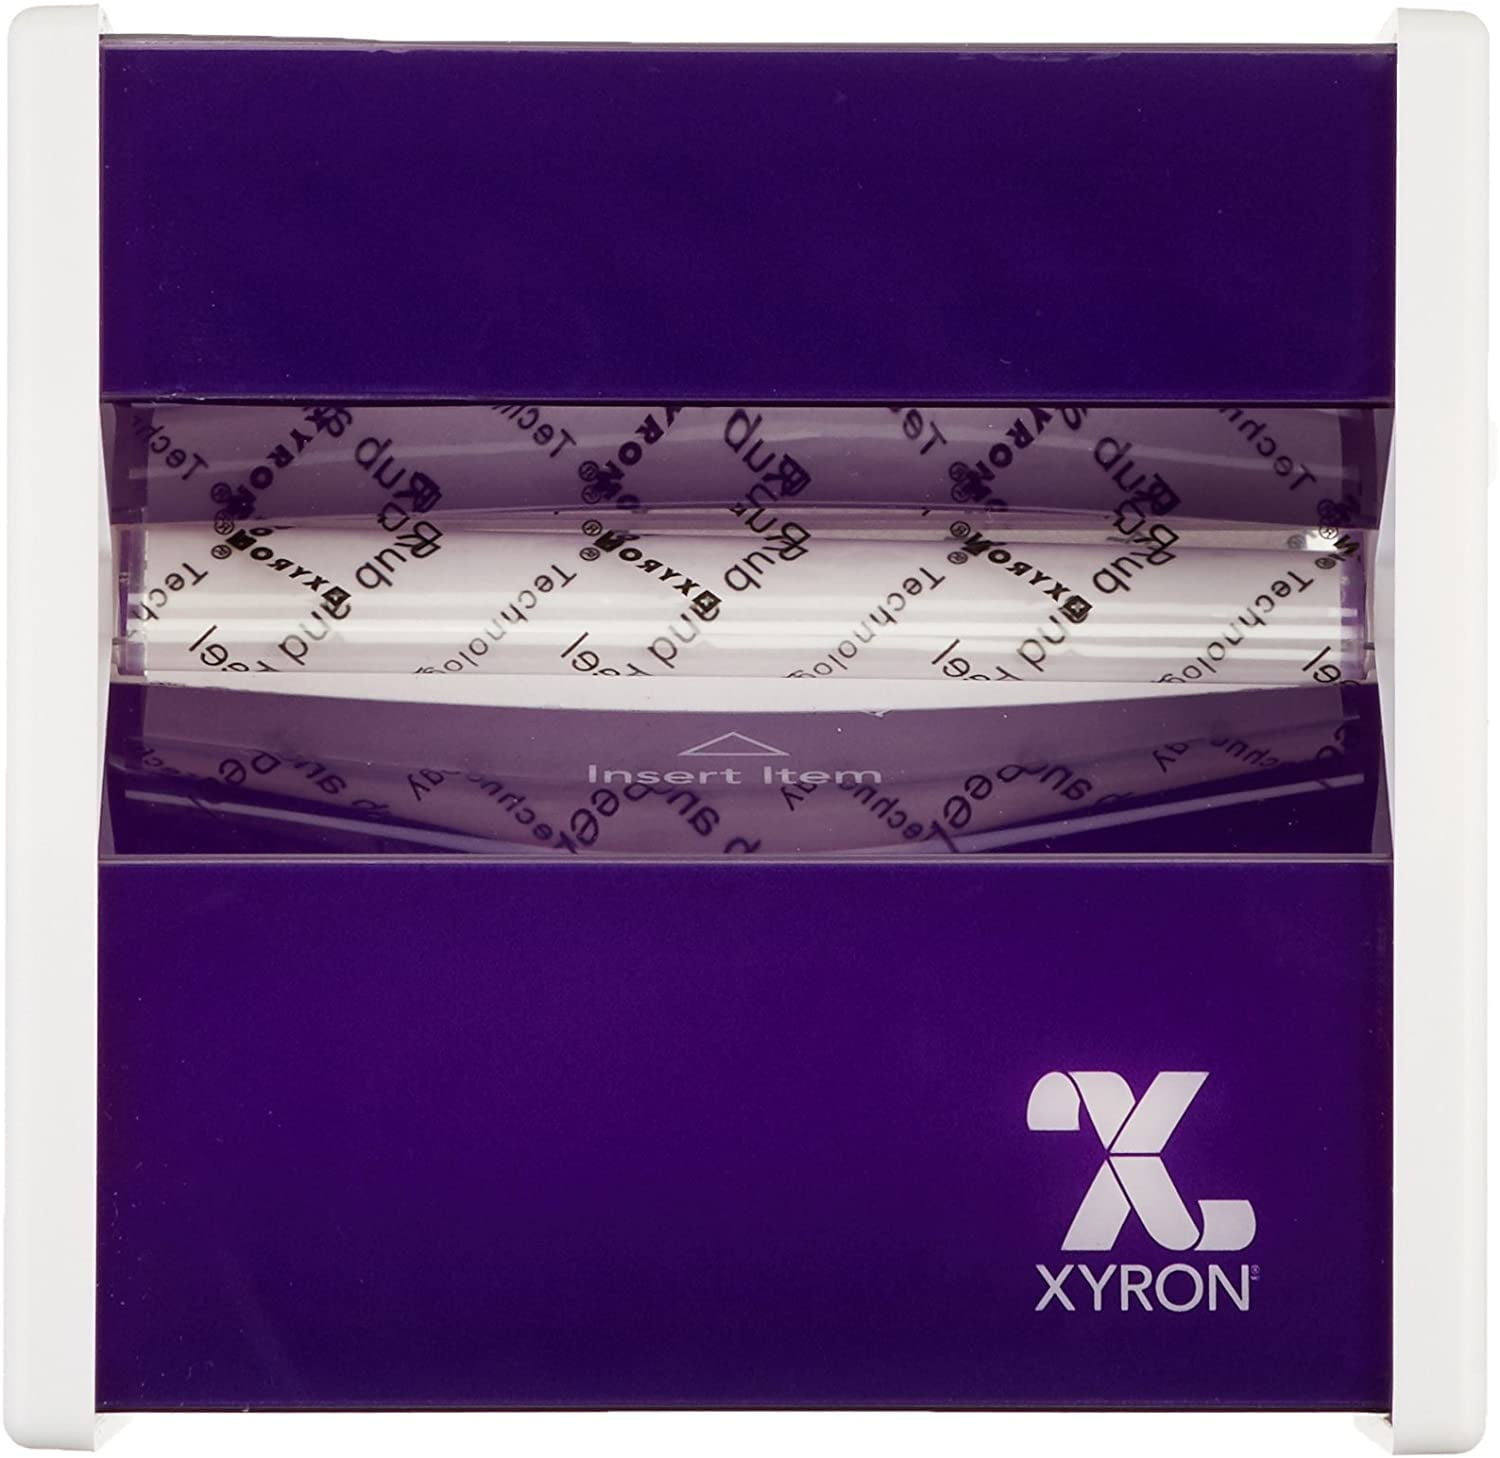 Xyron 3 Sticker Maker